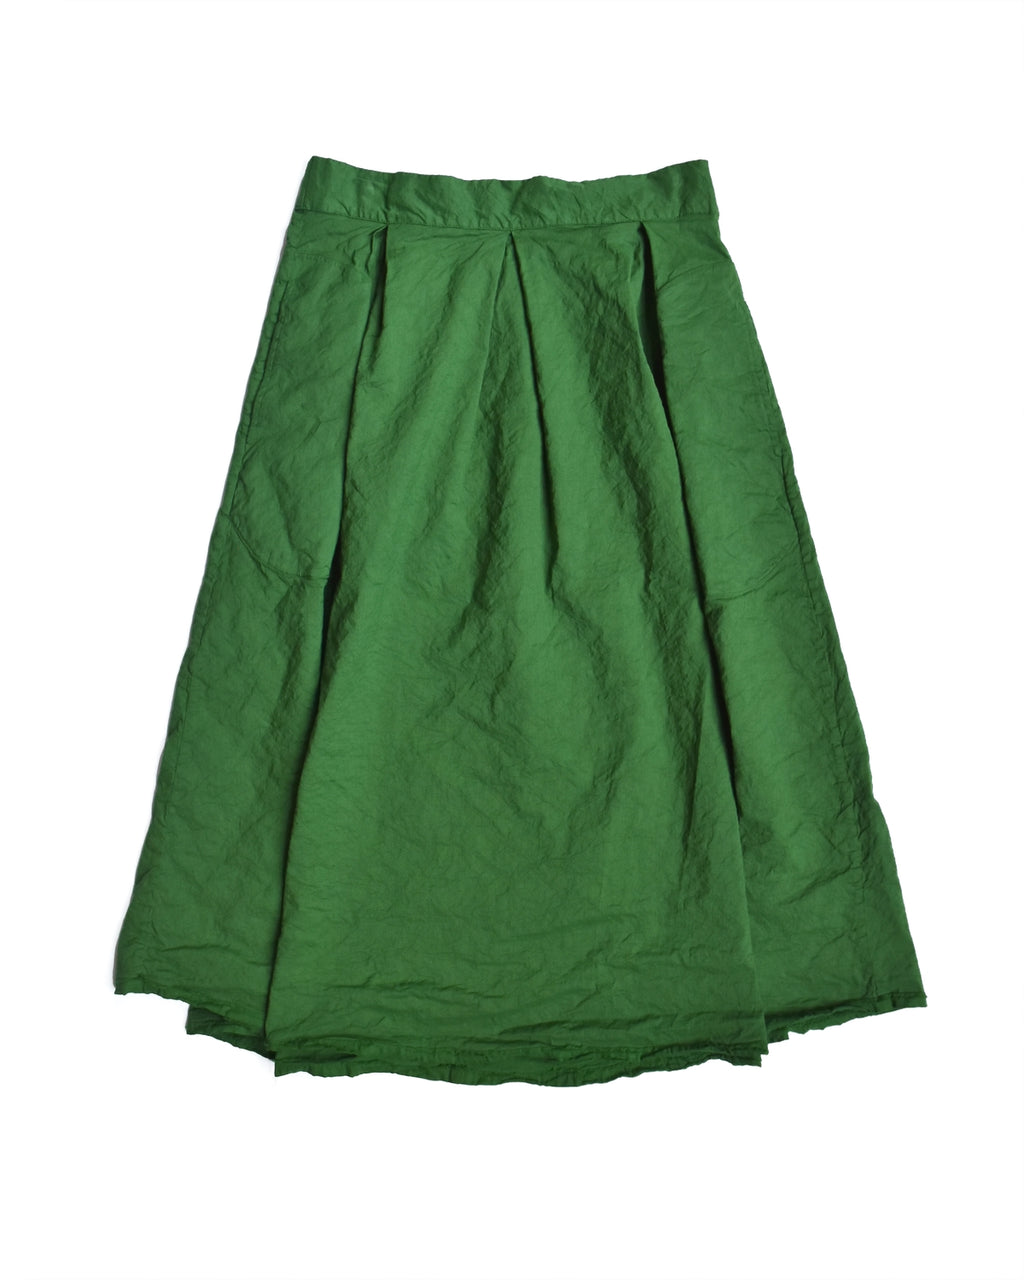 Aequamente Kelly Green Crinkled Cotton Skirt